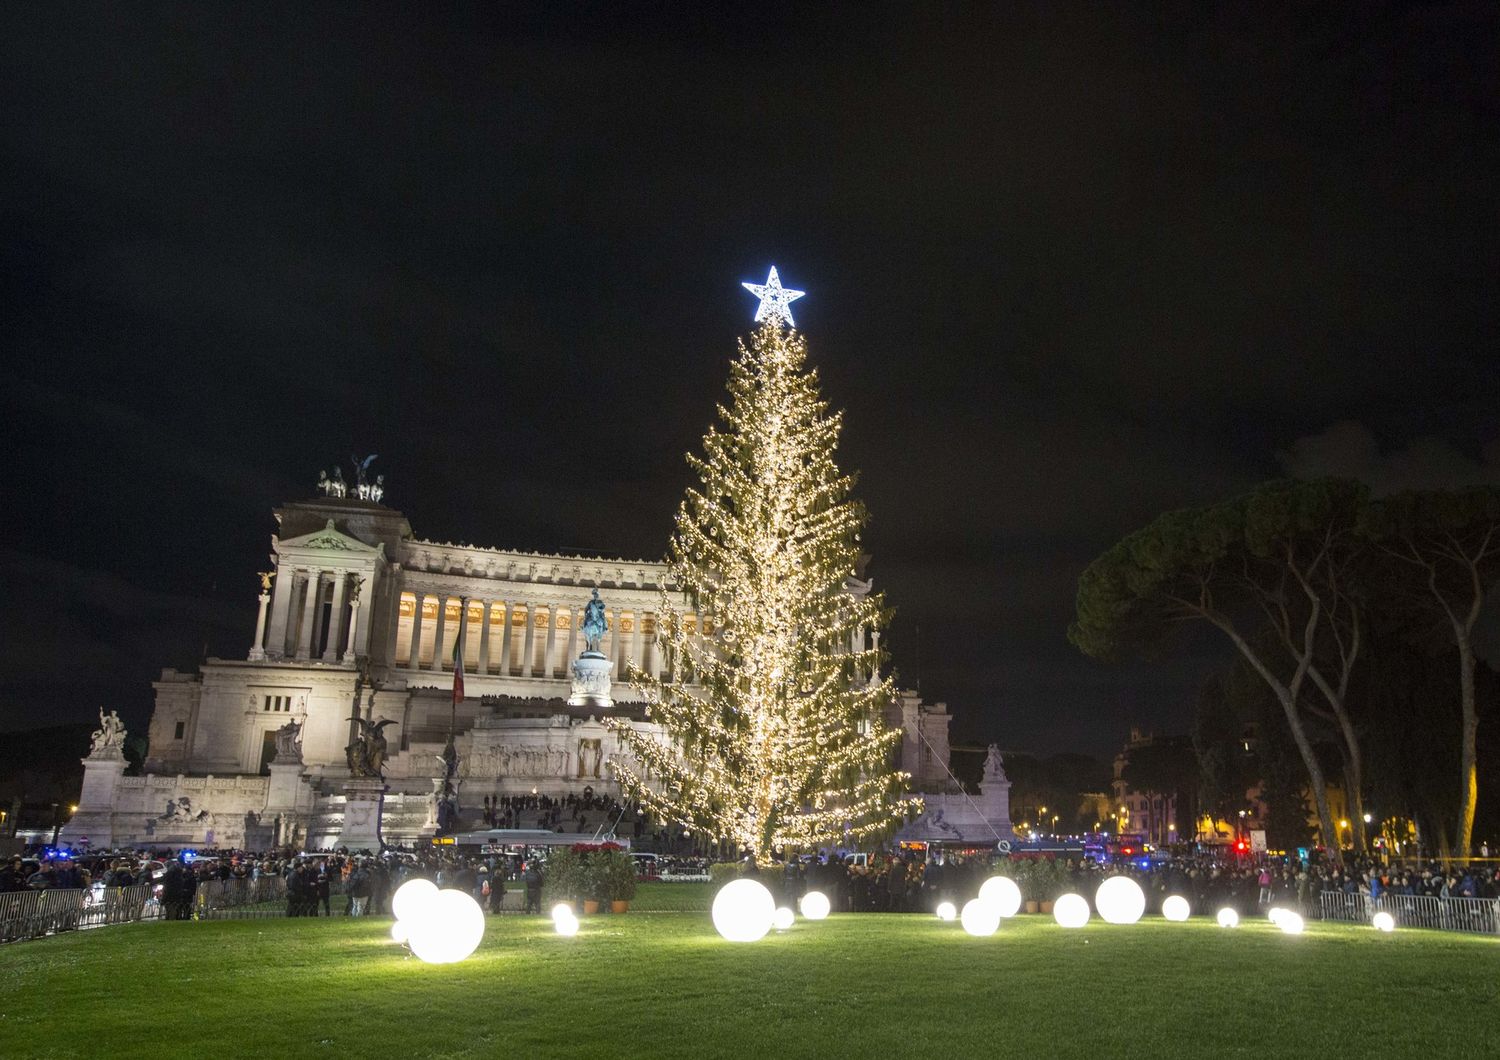 Accensione dell'albero di Natale a Piazza Venezia, Roma (AGF)